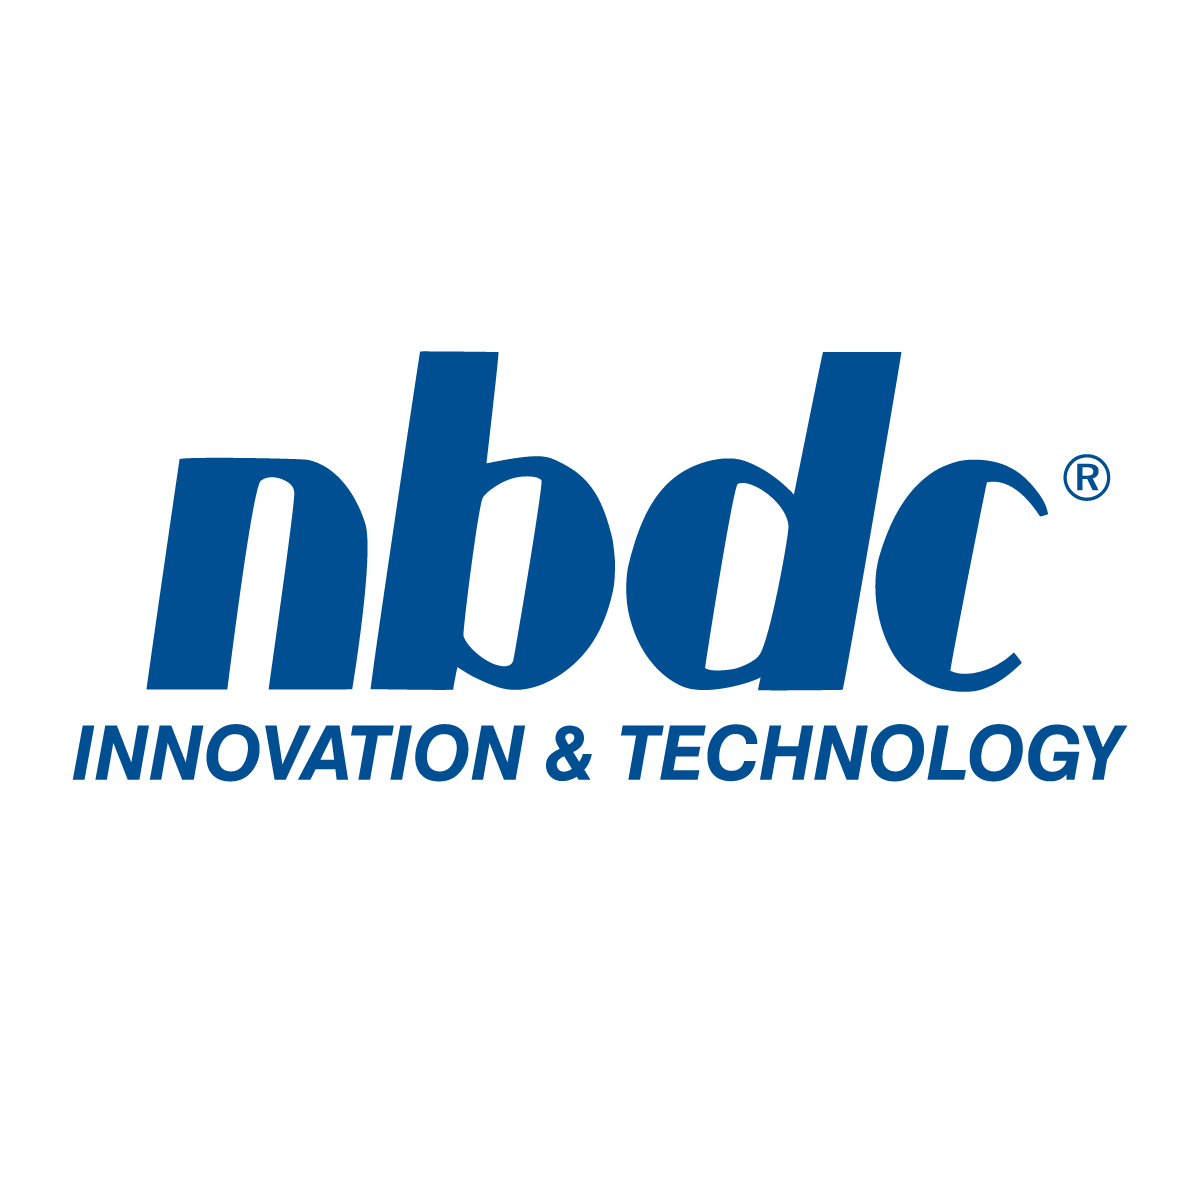 nbdc-innotech-logo-2384.jpg